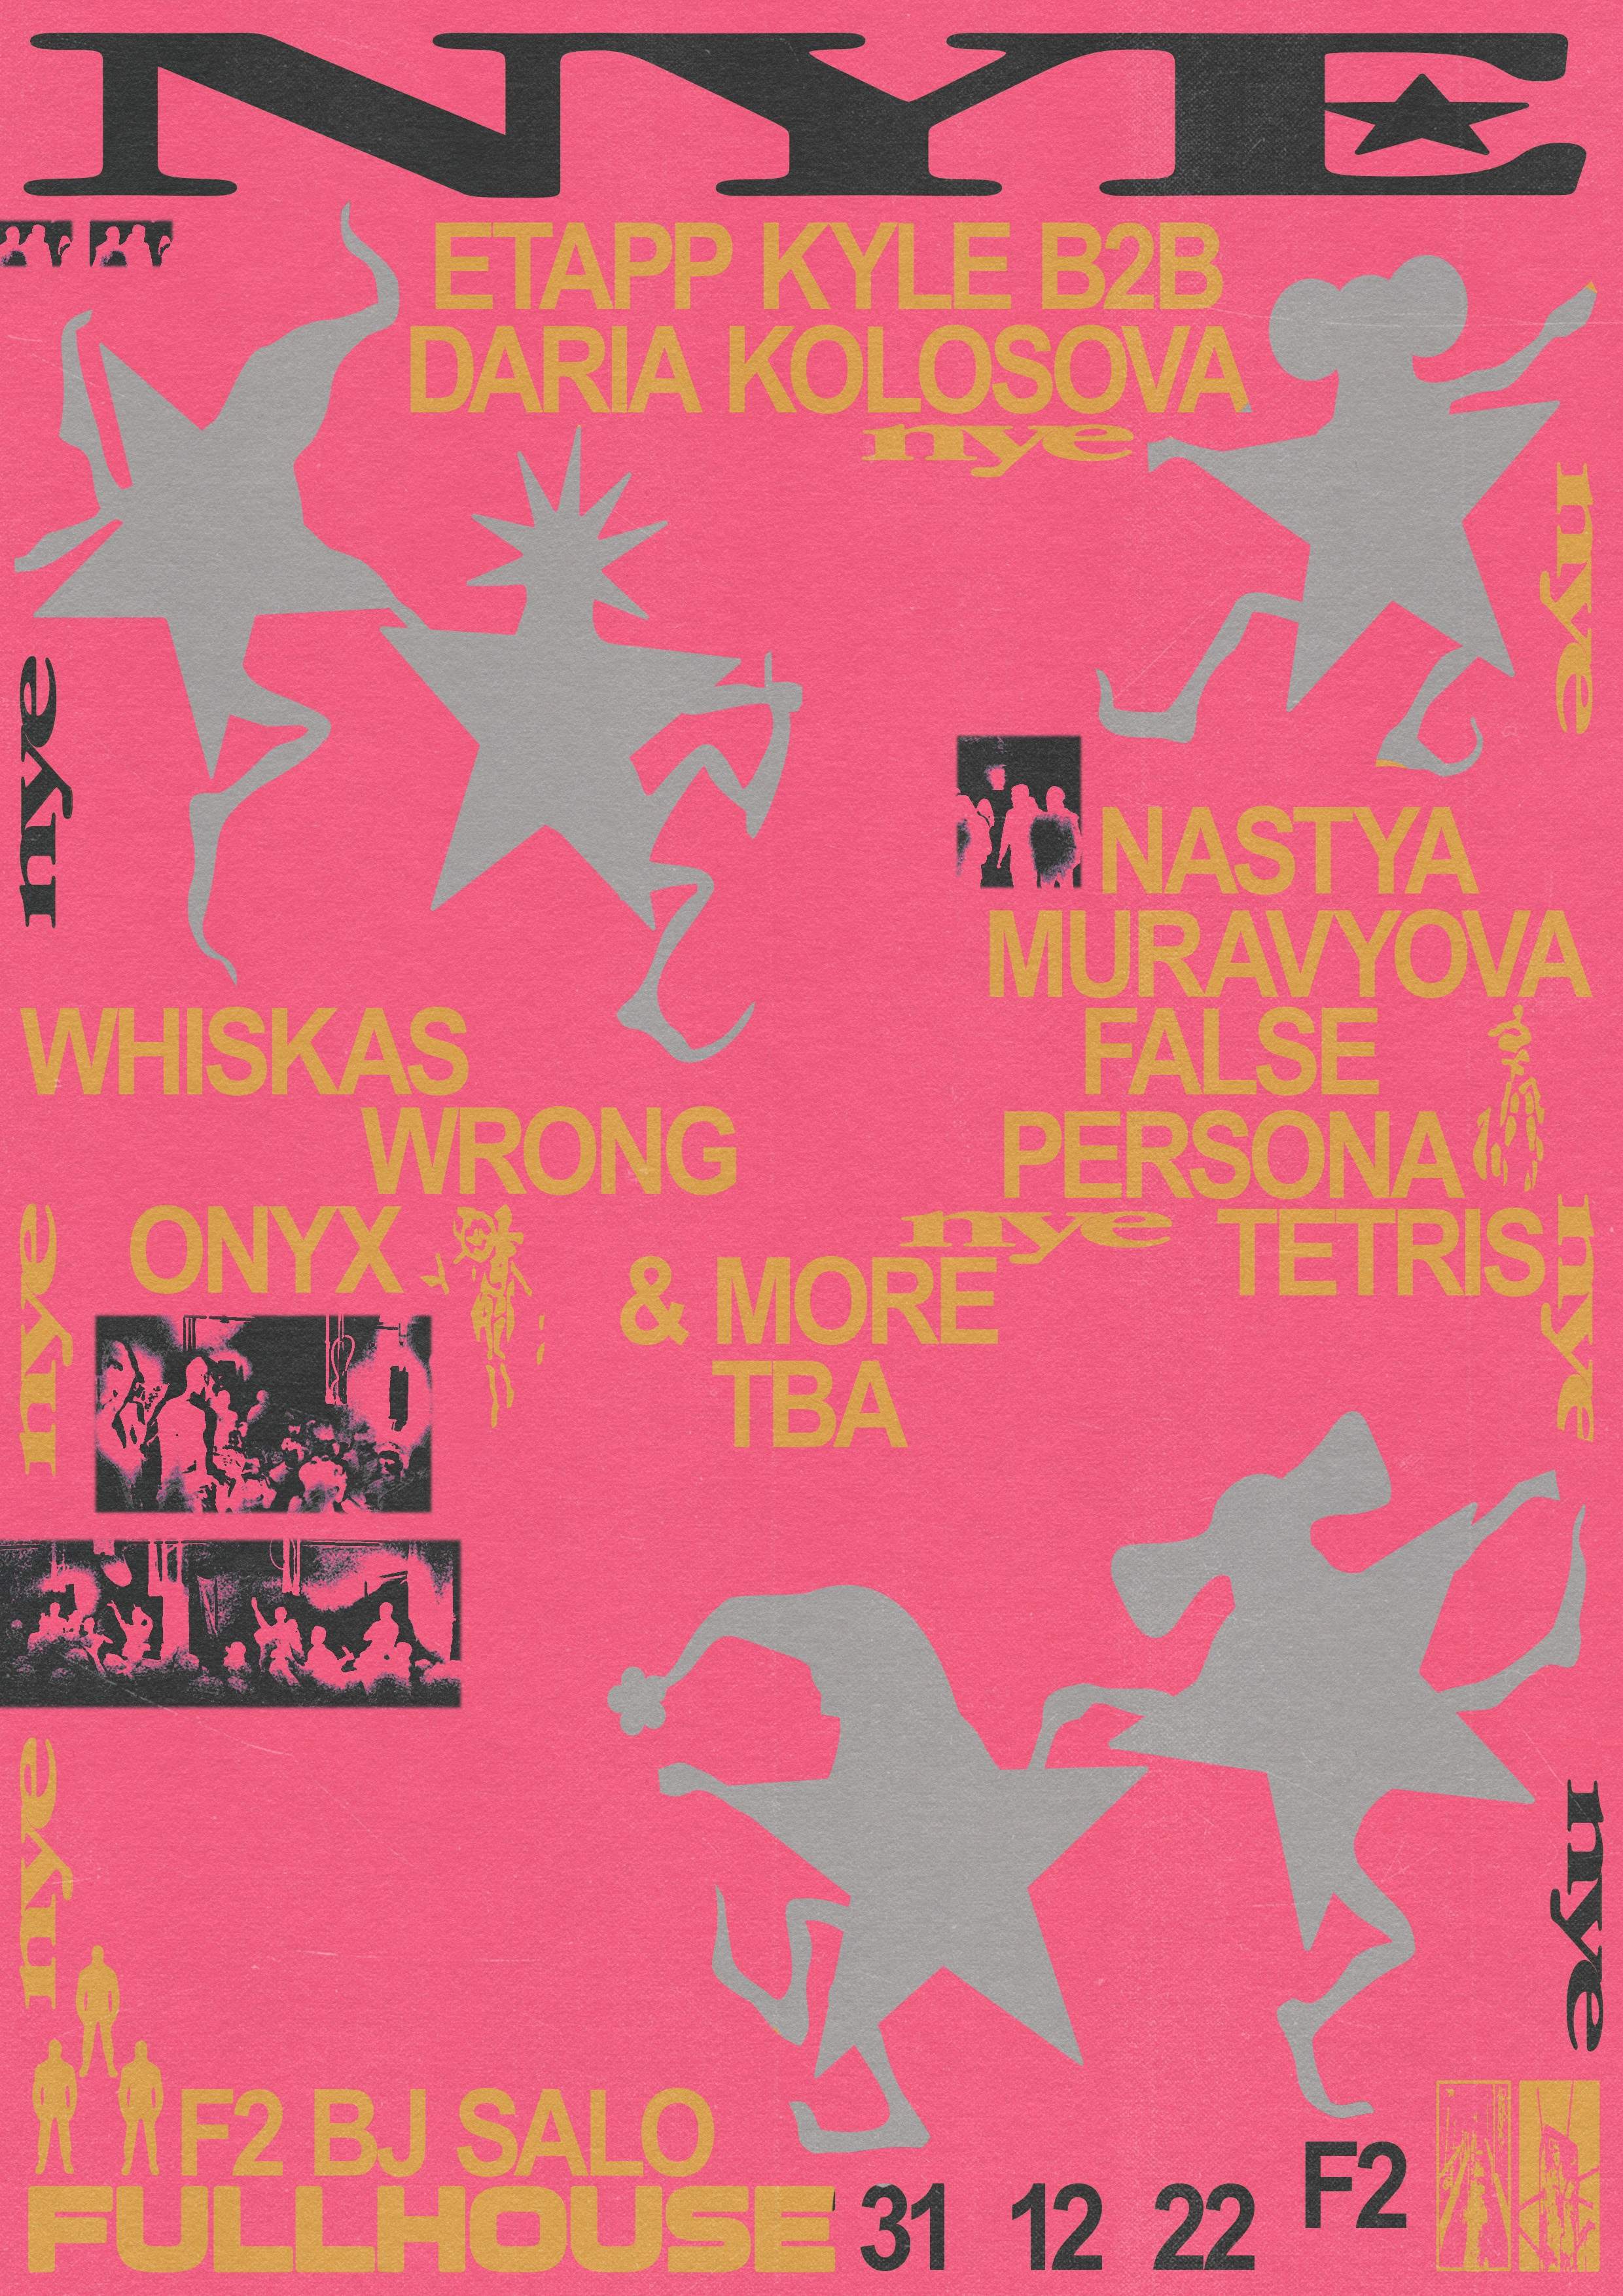 NYE: Daria Kolosova + Etapp Kyle + NASTYA MURAVYOVA + False Persona - Página trasera